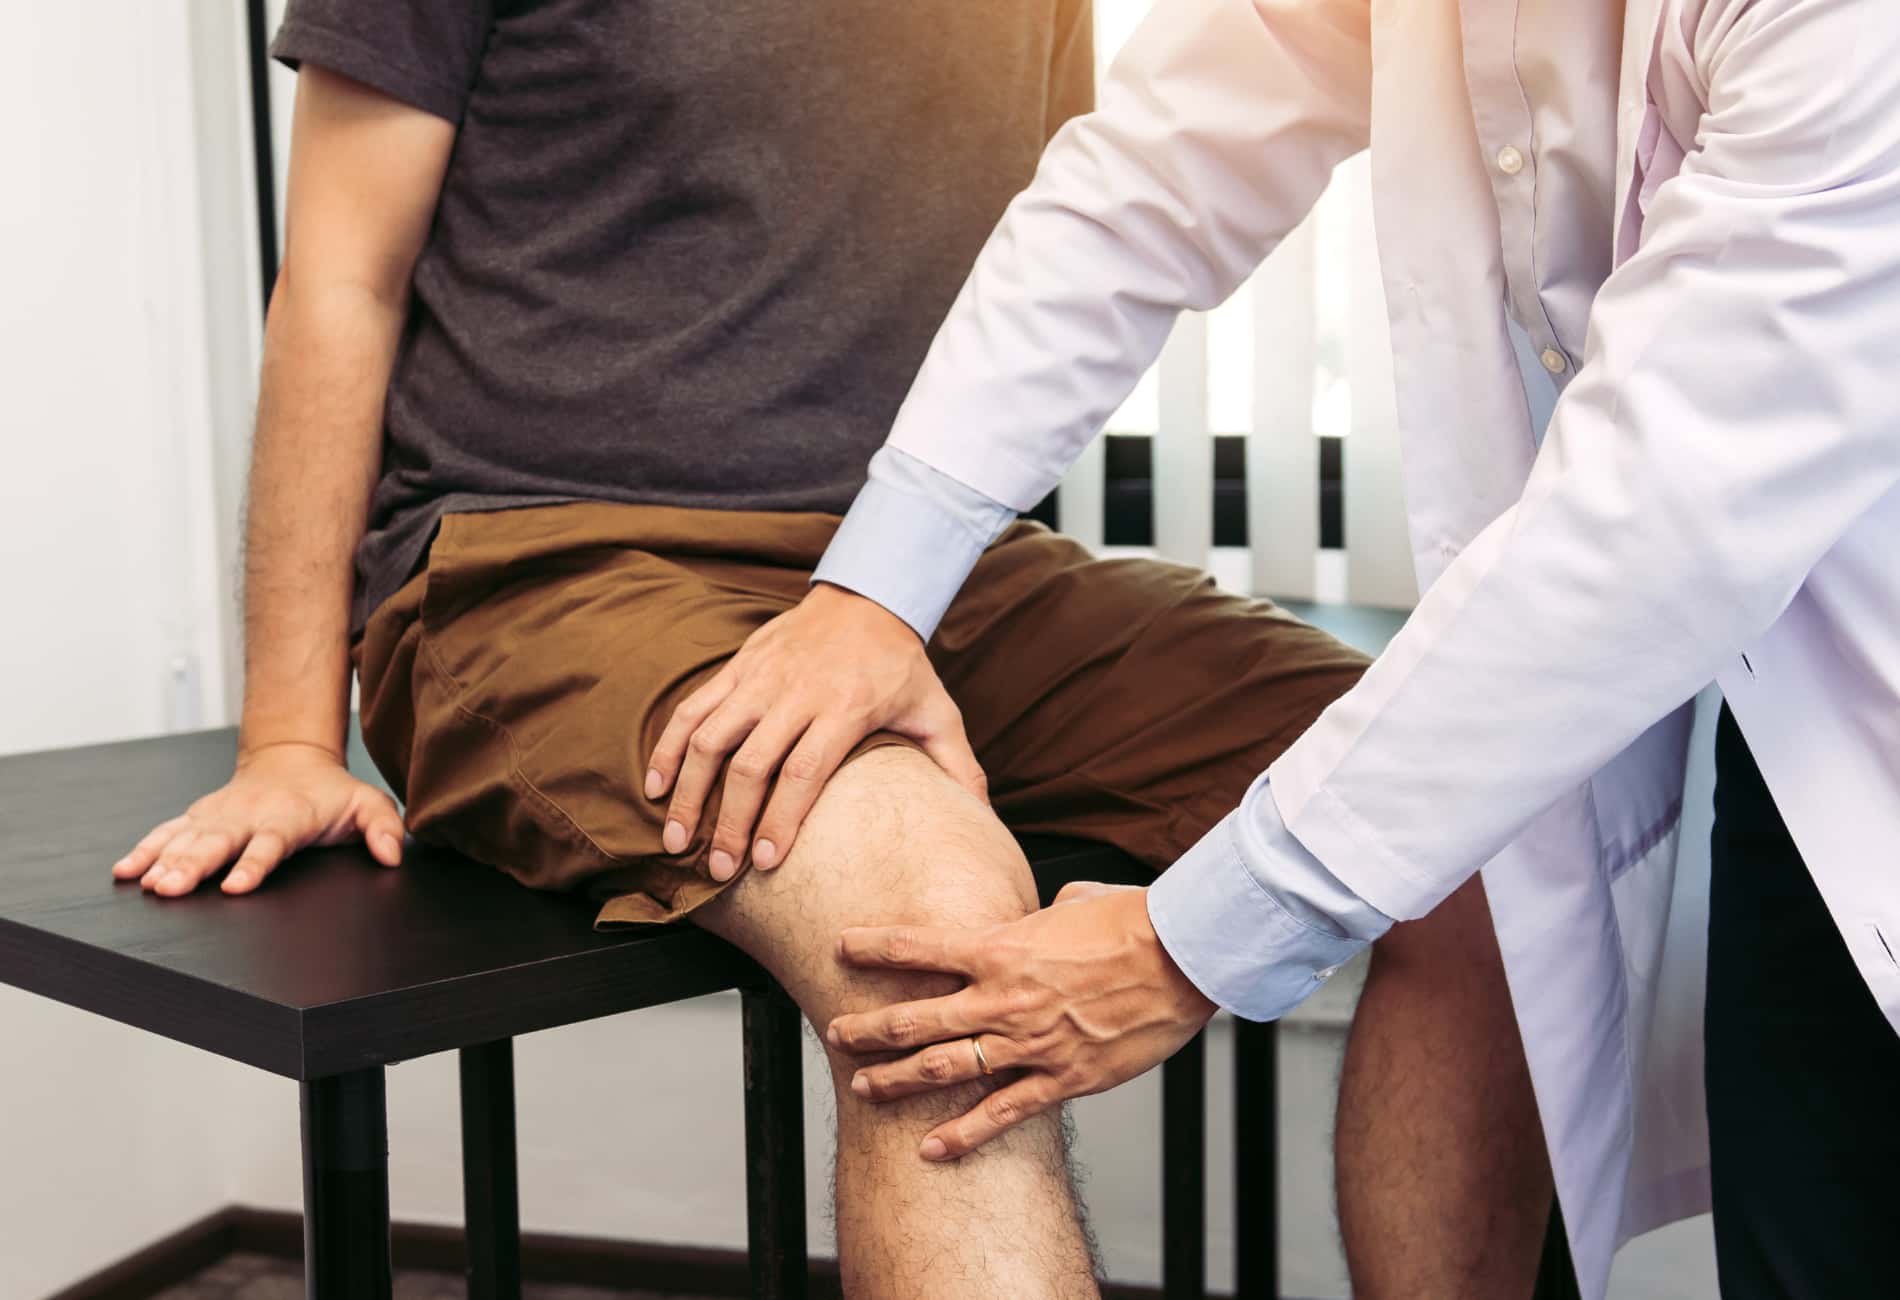 fisioterapeuta analisando joelho de paciente